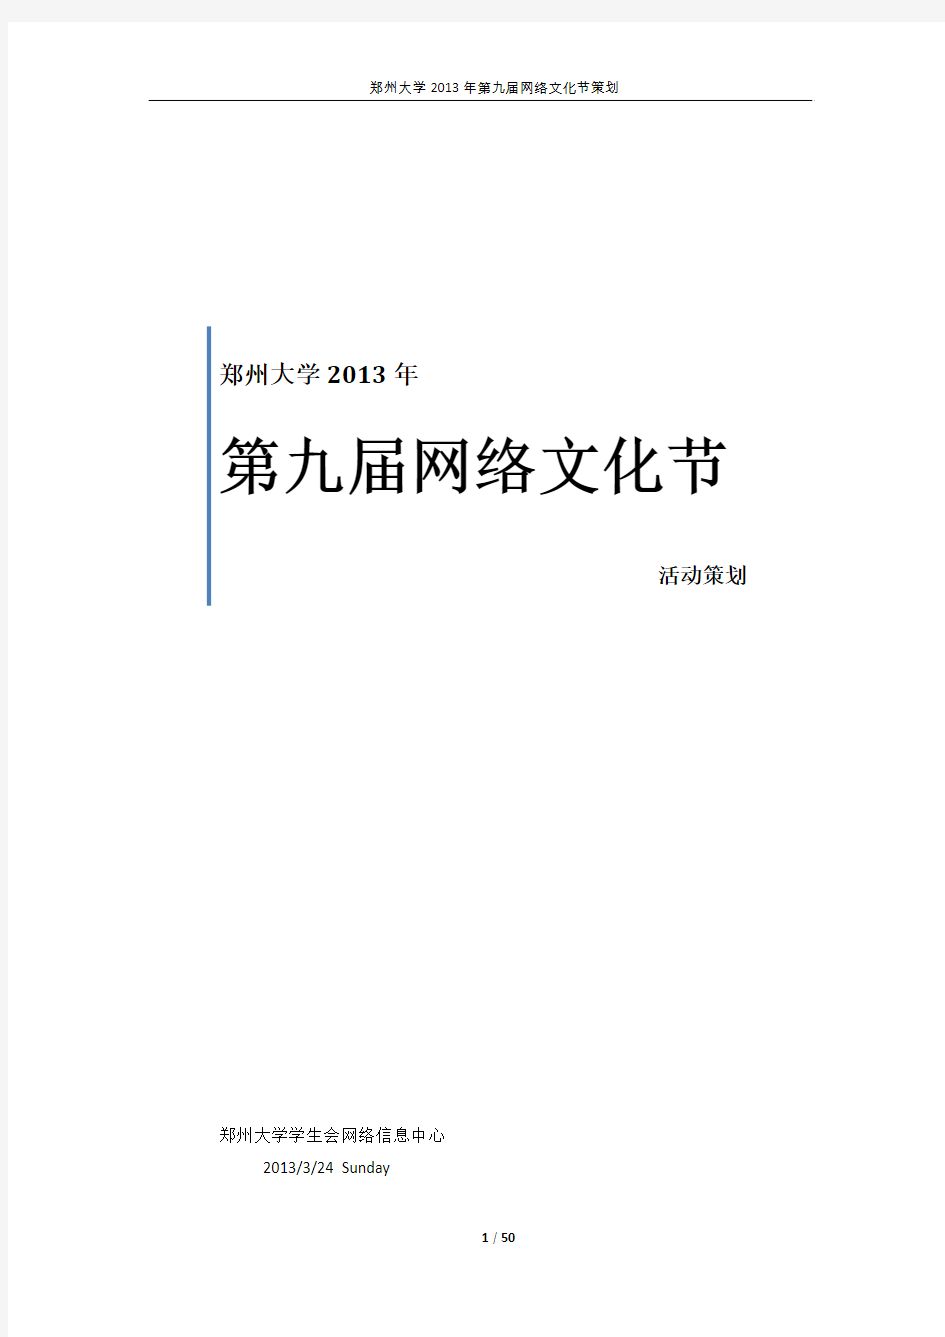 郑州大学2013年第九届网络文化节总体策划(定稿修订版)